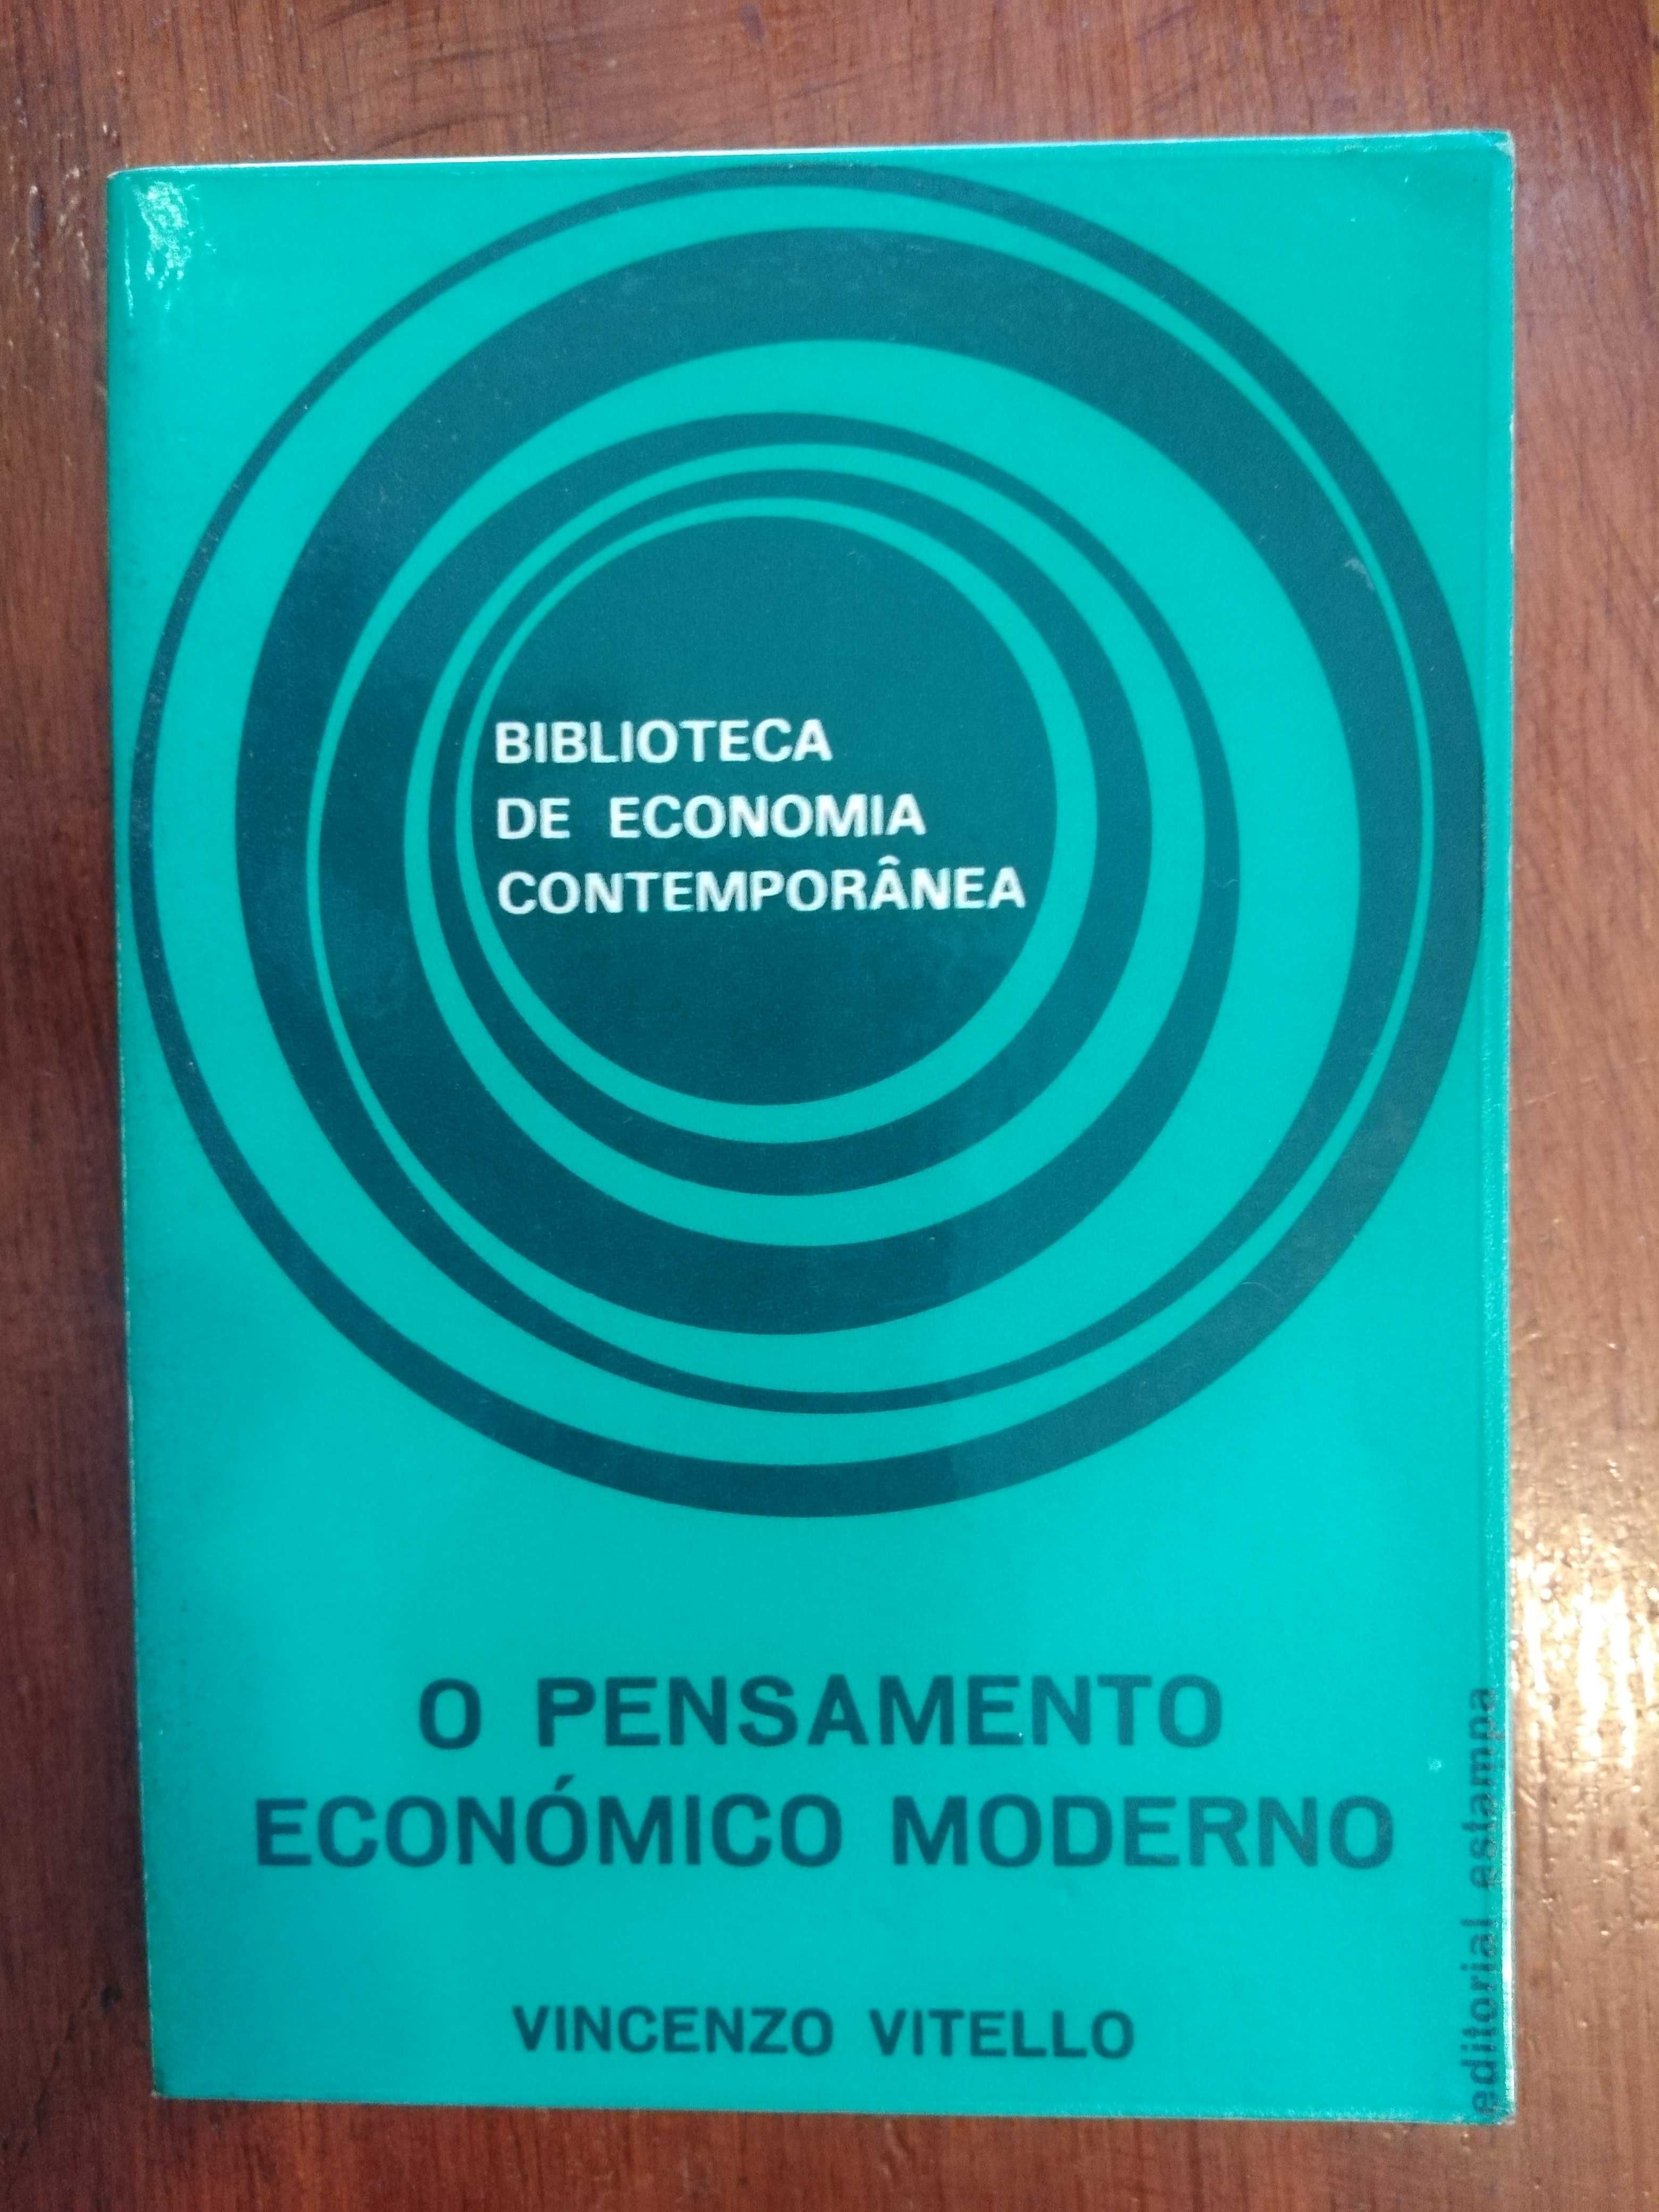 Vincenzo Vitello - O pensamento económico moderno